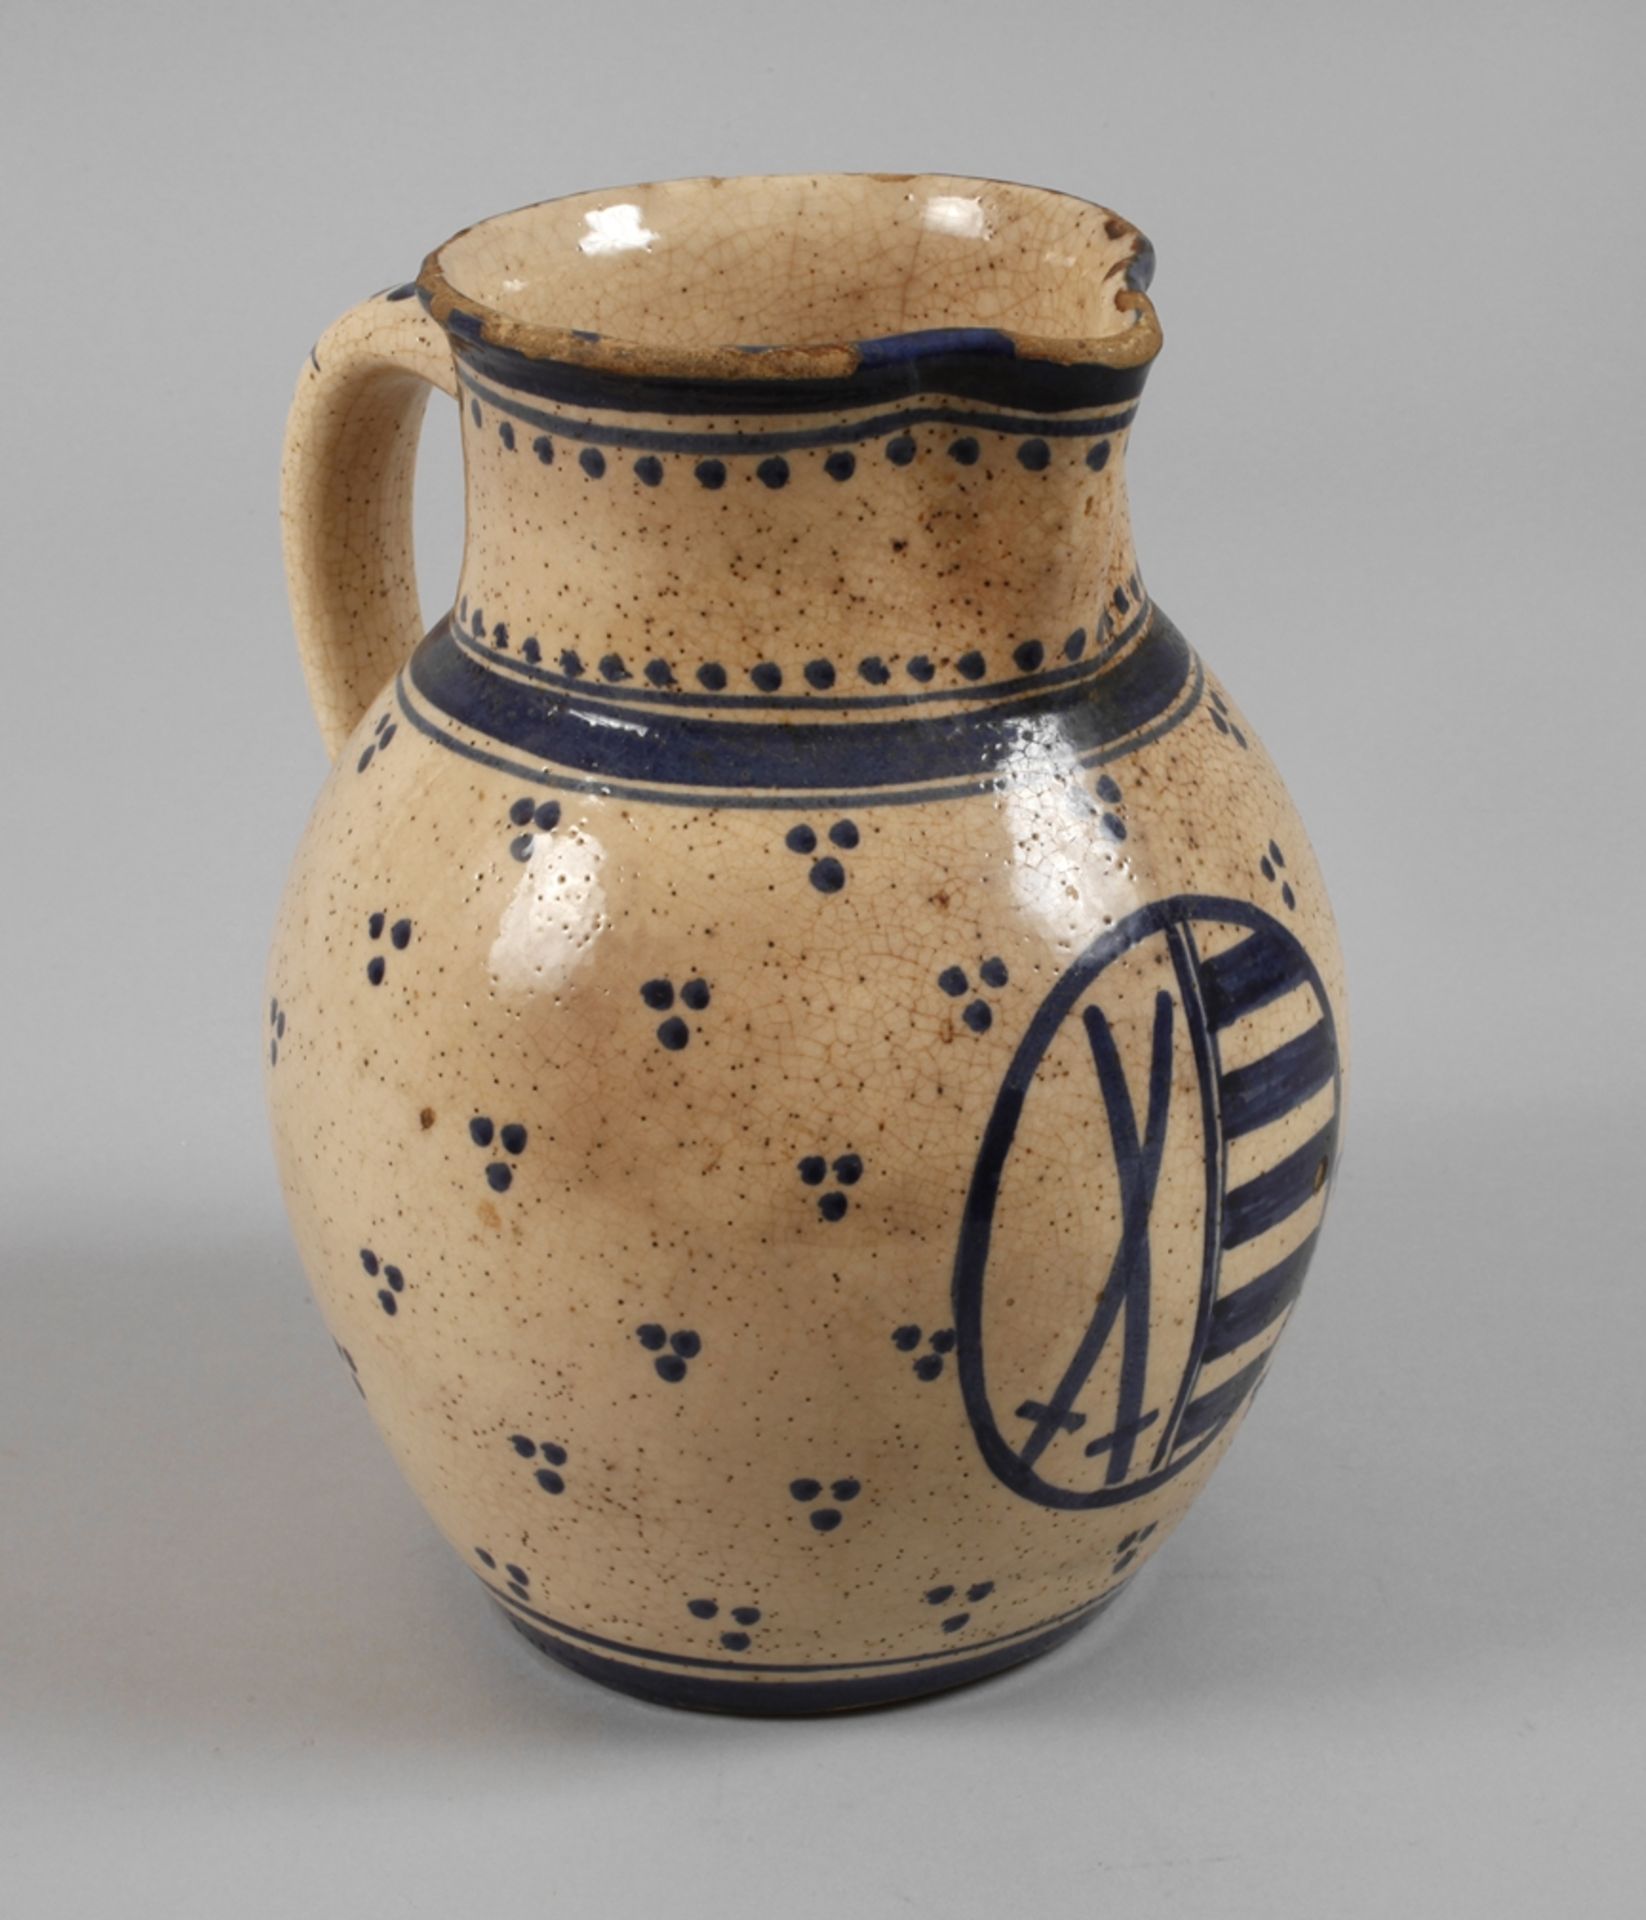 Saxon wine jug